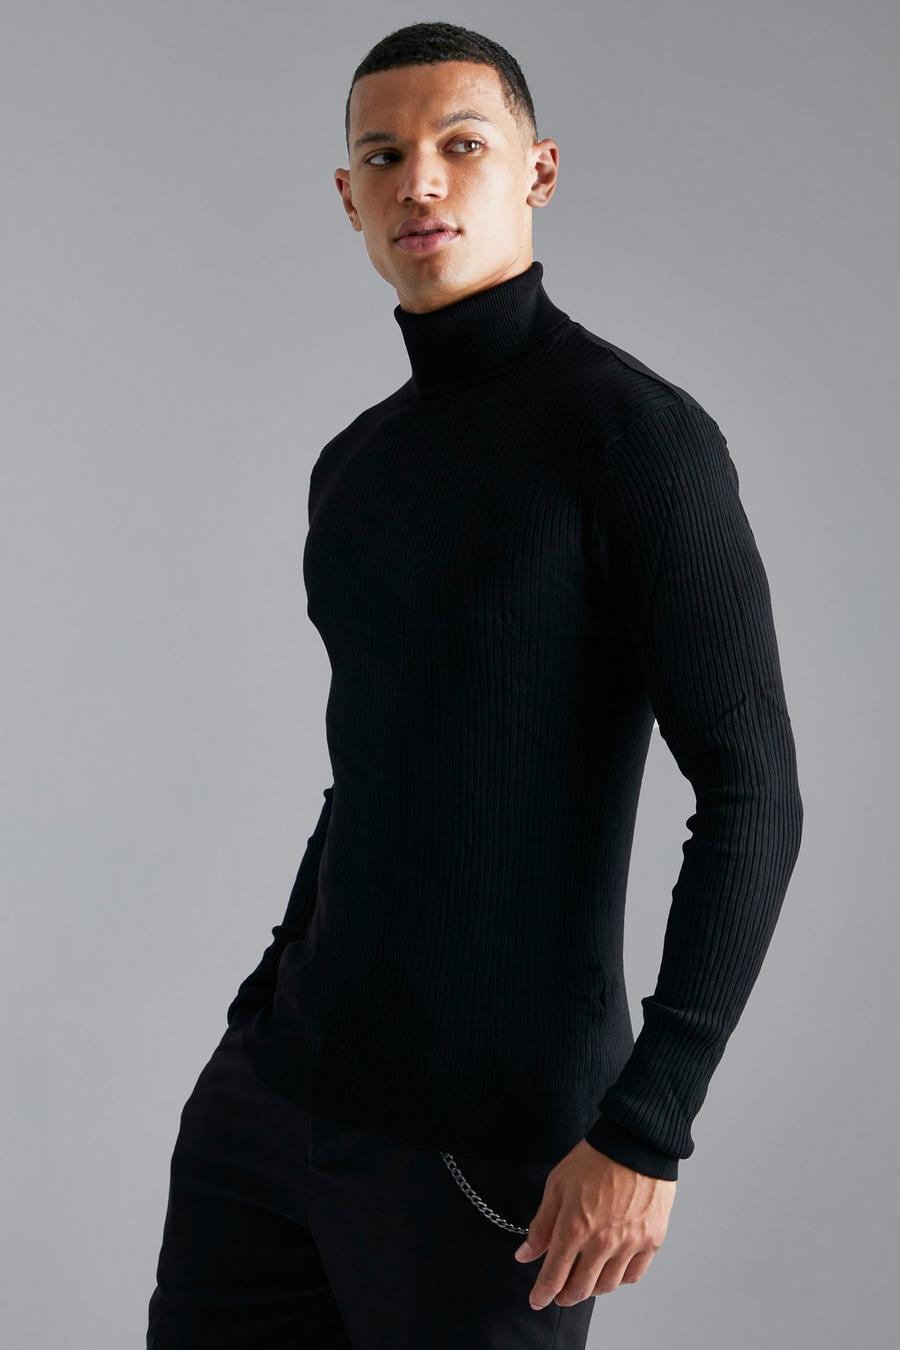 שחור black סוודר ארוג בגזרה צמודה מבד ממוחזר עם צווארון נגלל לנשים גבוהות